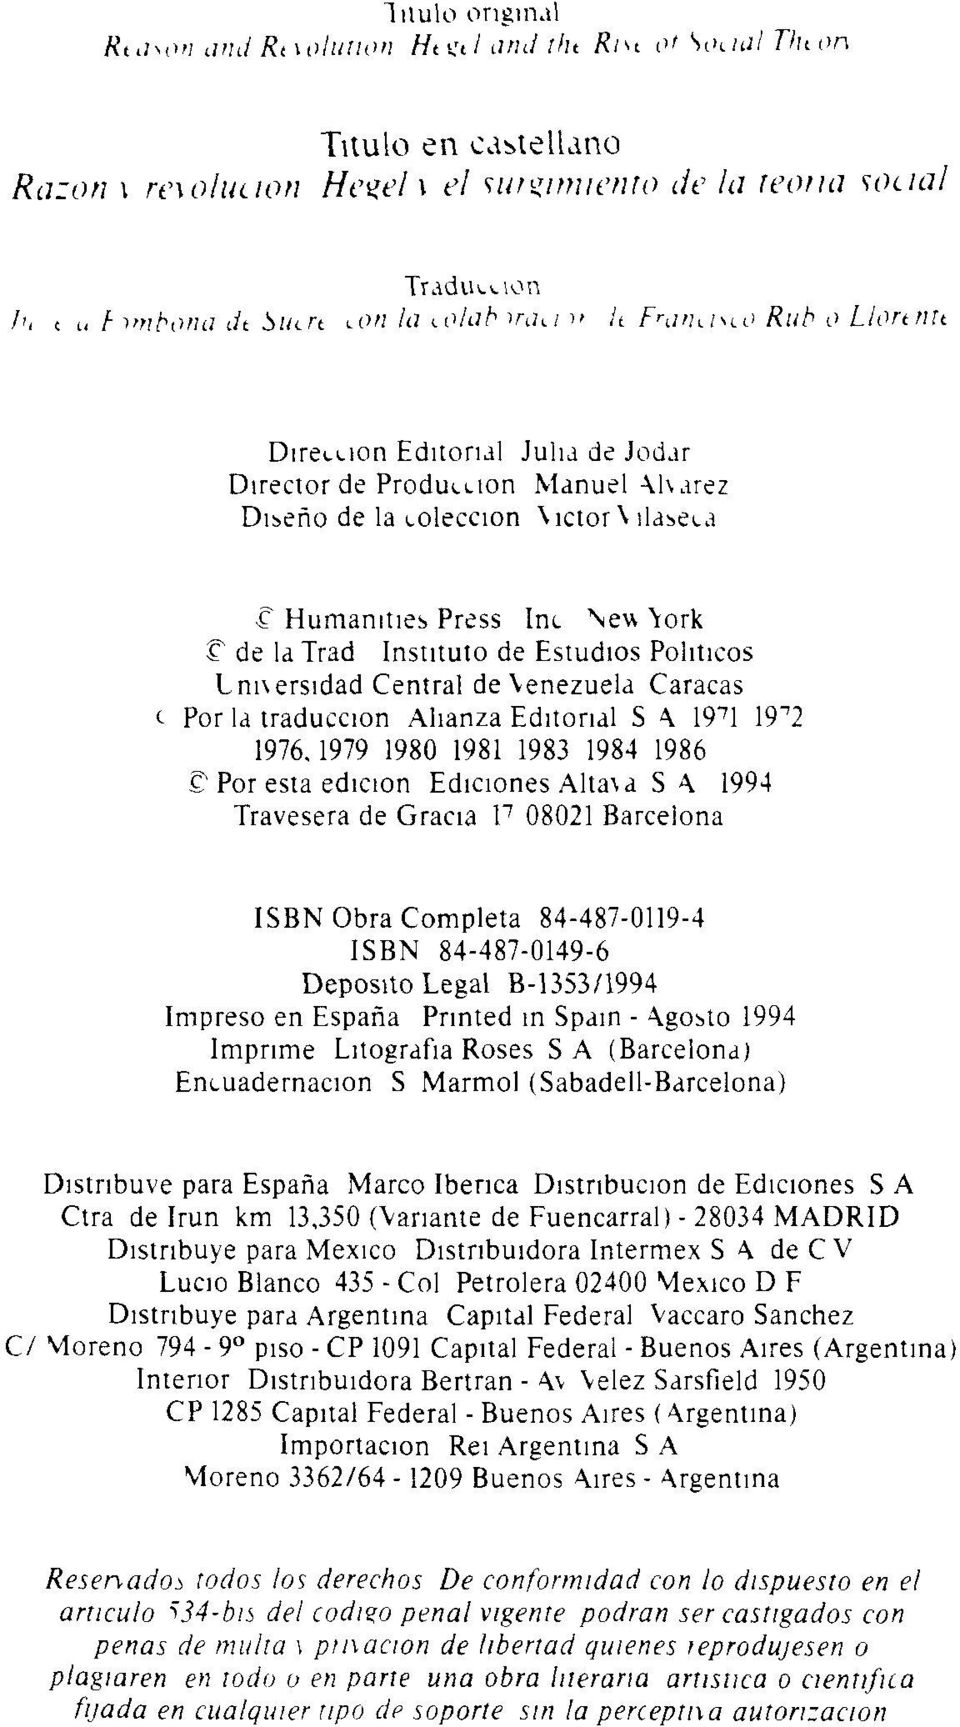 Humanities Press Inc New \ork IT de latrad Instituto de Estudios Políticos Lm\ersidad Central de Venezuela Caracas t Por la traducción Alianza Editorial S A 19 7 1 19^2 1976.